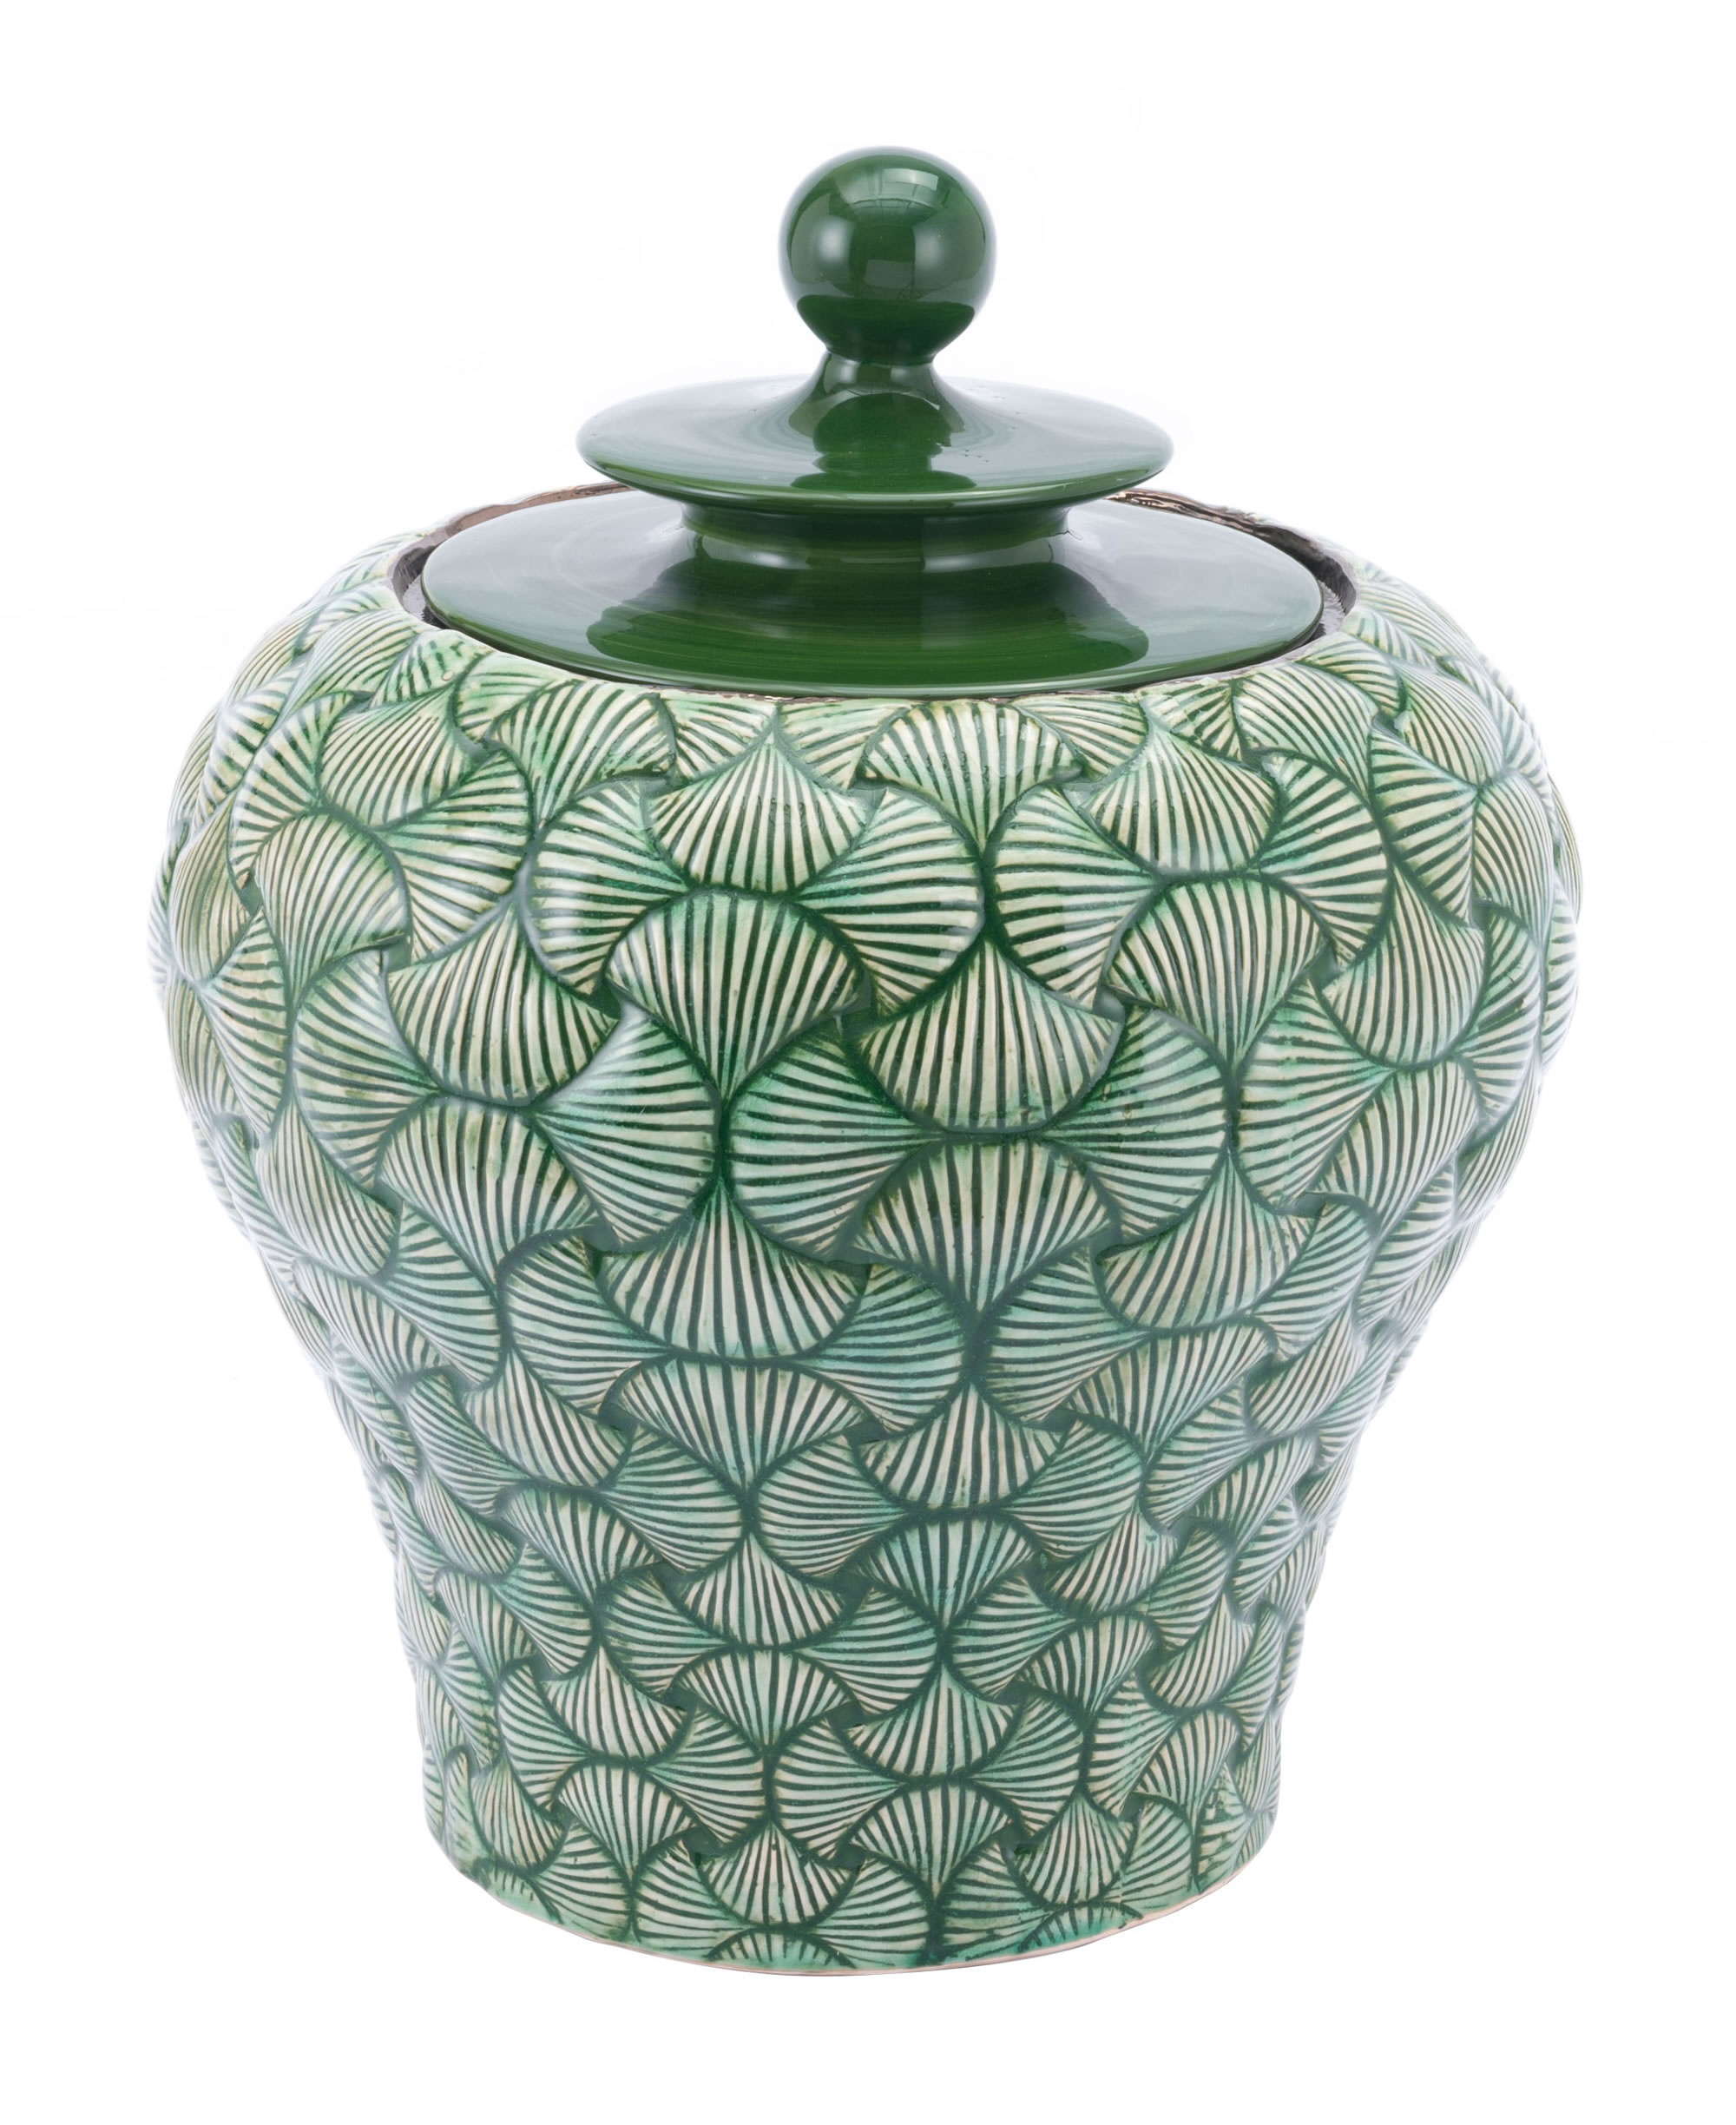 16.7" x 16.7" x 20.5" Green, Ceramic, Small Temple Jar